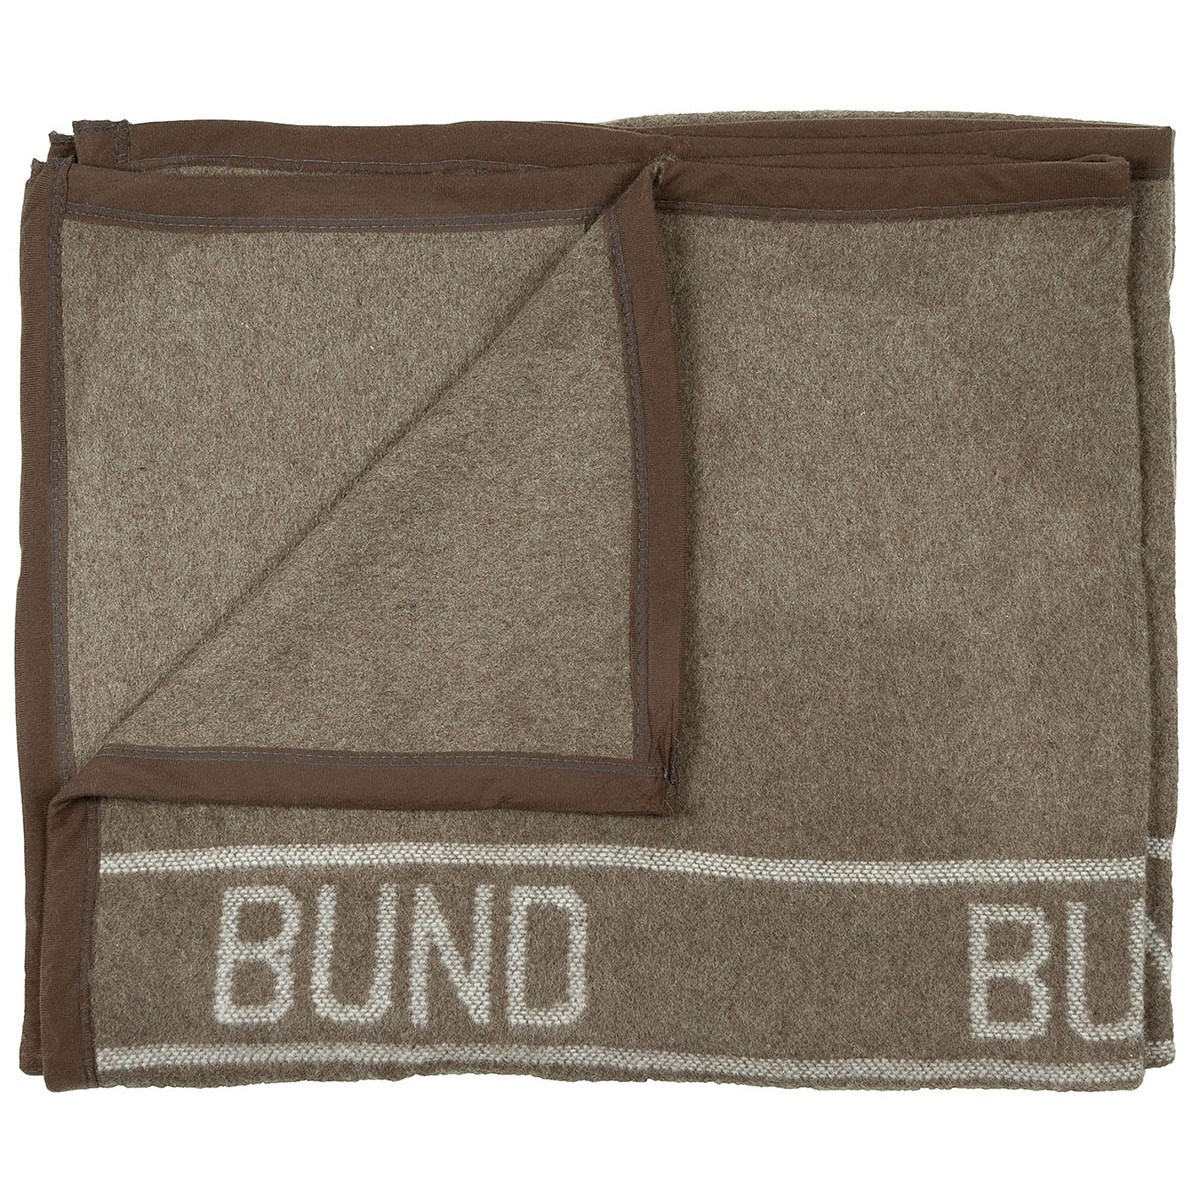 Wool blanket BUND 220x130 brown-green Bundeswehr 32352 L-11